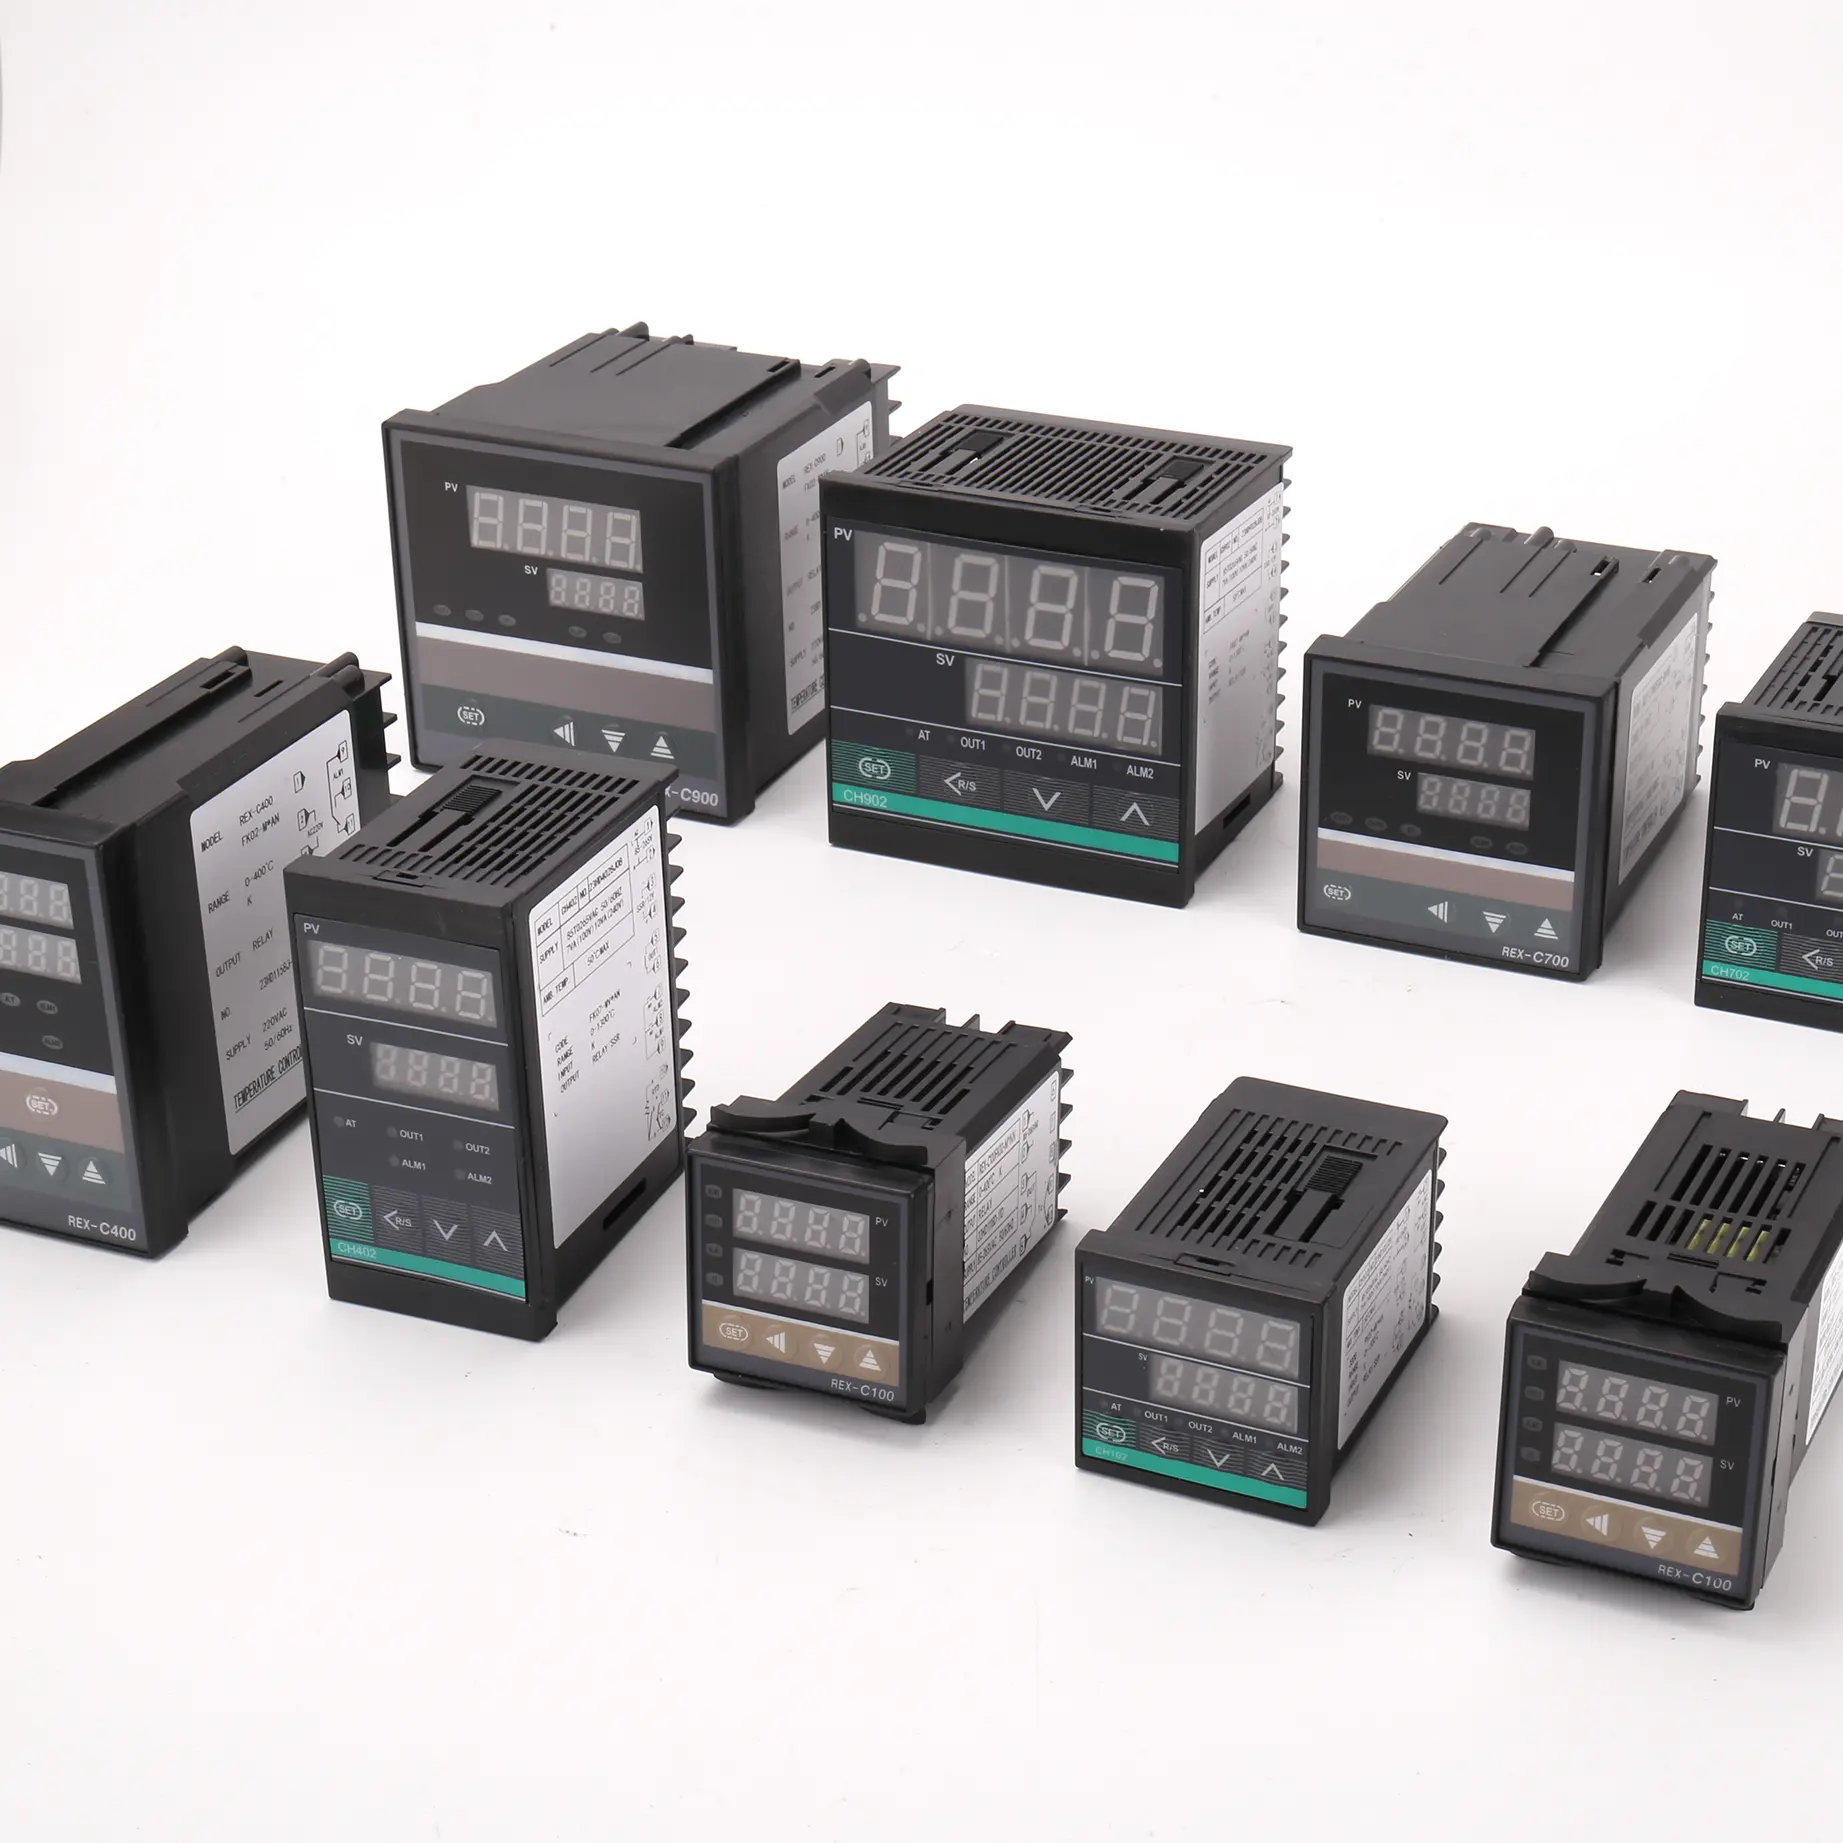 REX-C900 Régulateur de température industriel de haute qualité Lcd 220VAC Type K contrôleur de température intelligent à affichage numérique